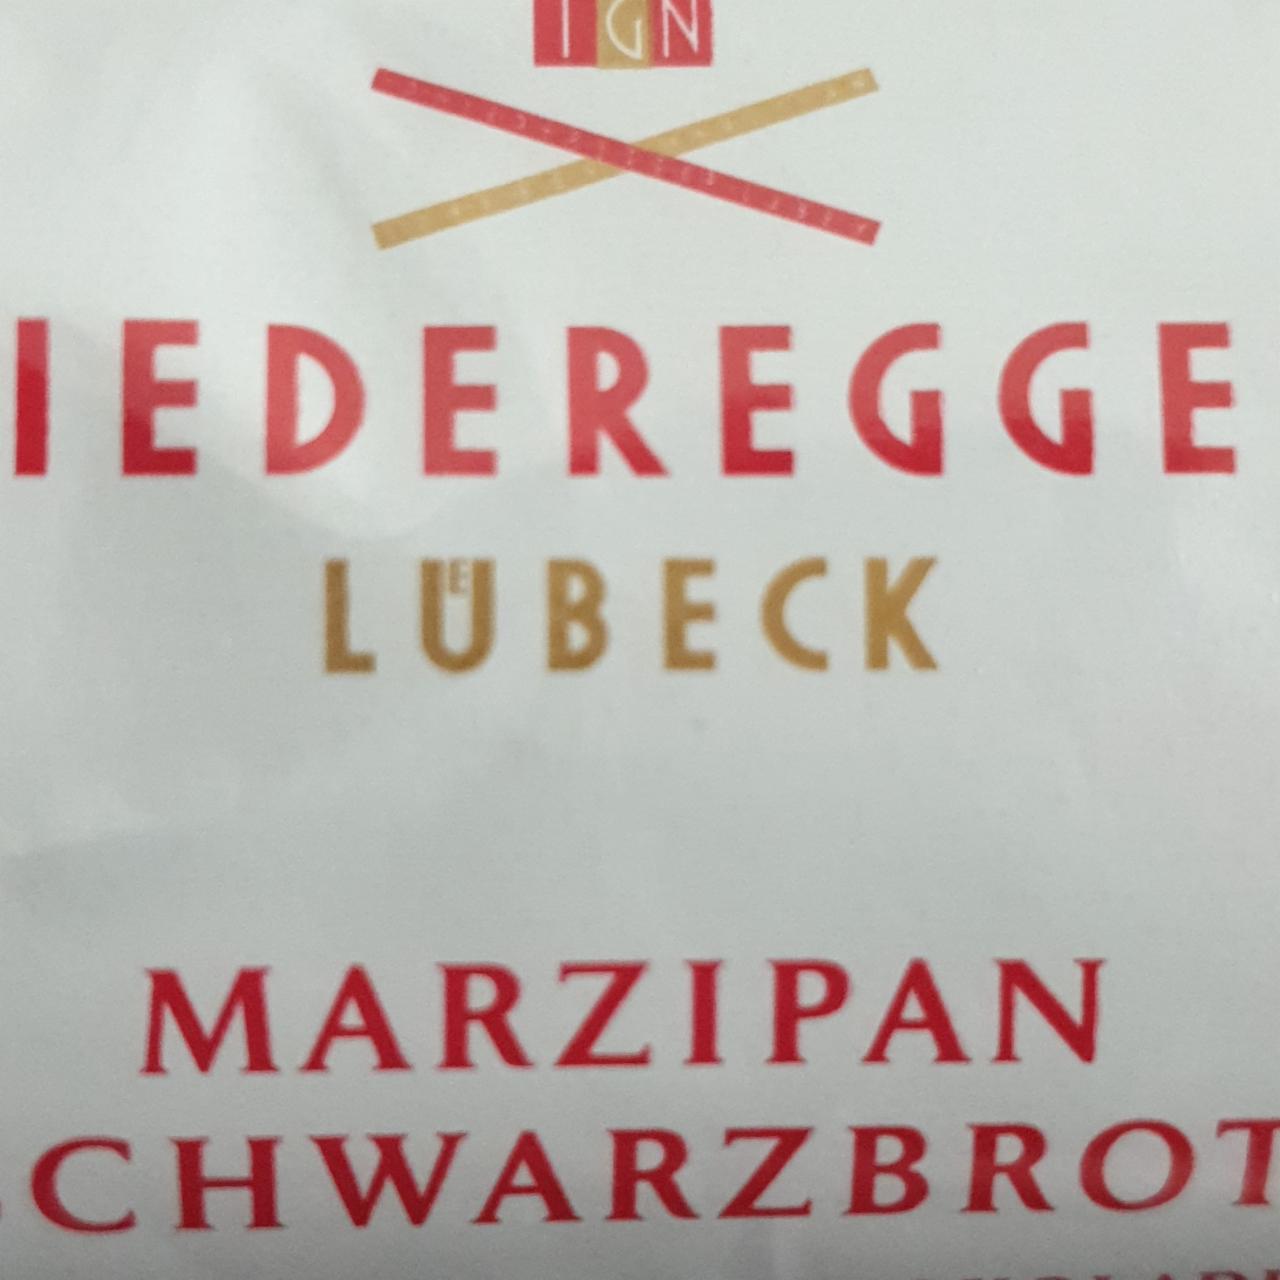 Фото - марципановый батончик в черном шоколаде Lübeck Marzipan Schwarzbrot Niederegger